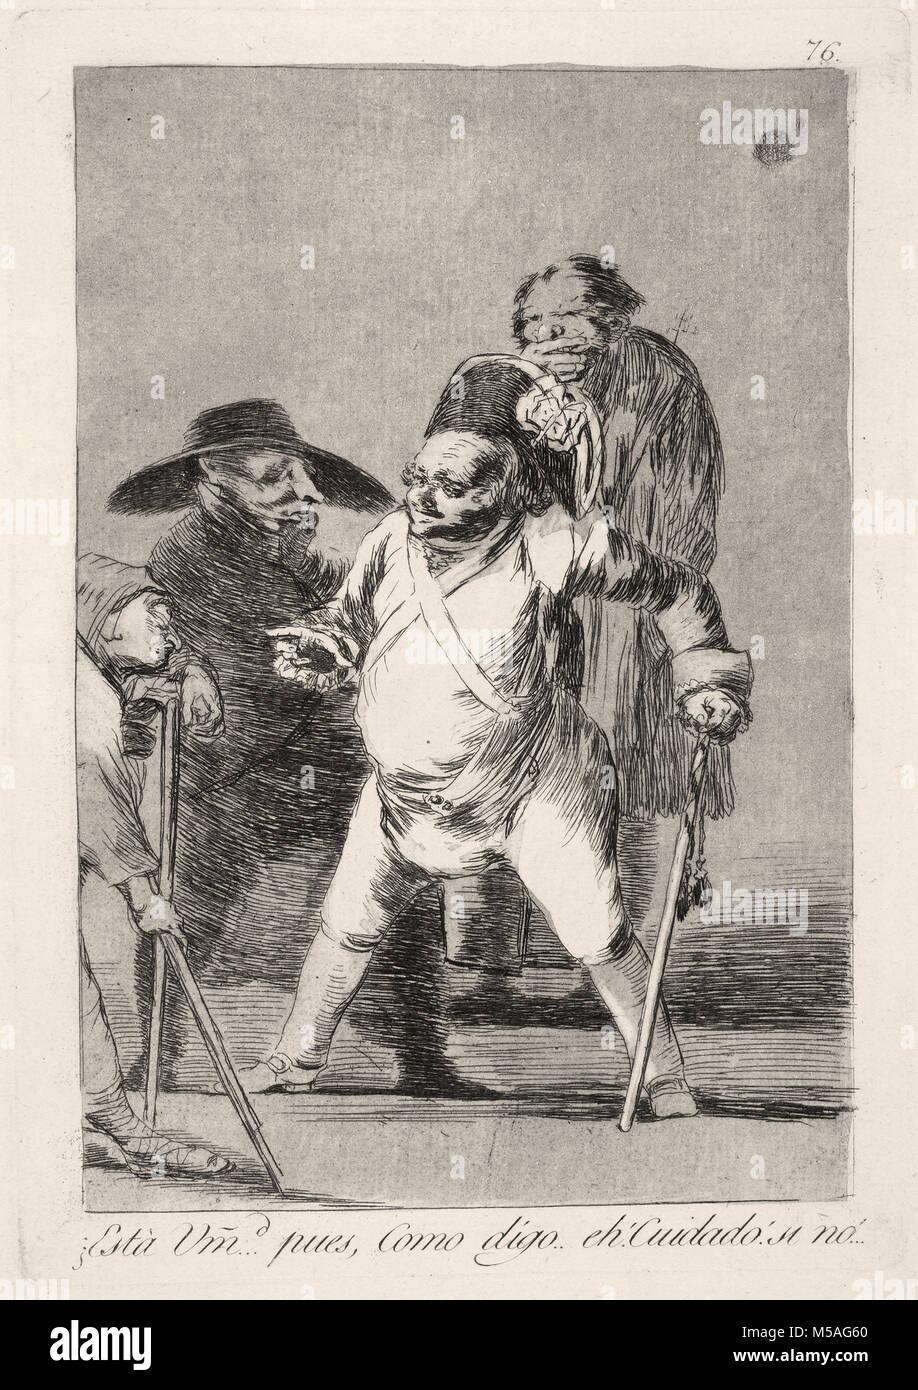 Francisco de Goya - Los Caprichos - Nr. 76 - ¿Está Vm... Pues, Como Digo... äh! Cuidado! Si keine!... Stockfoto